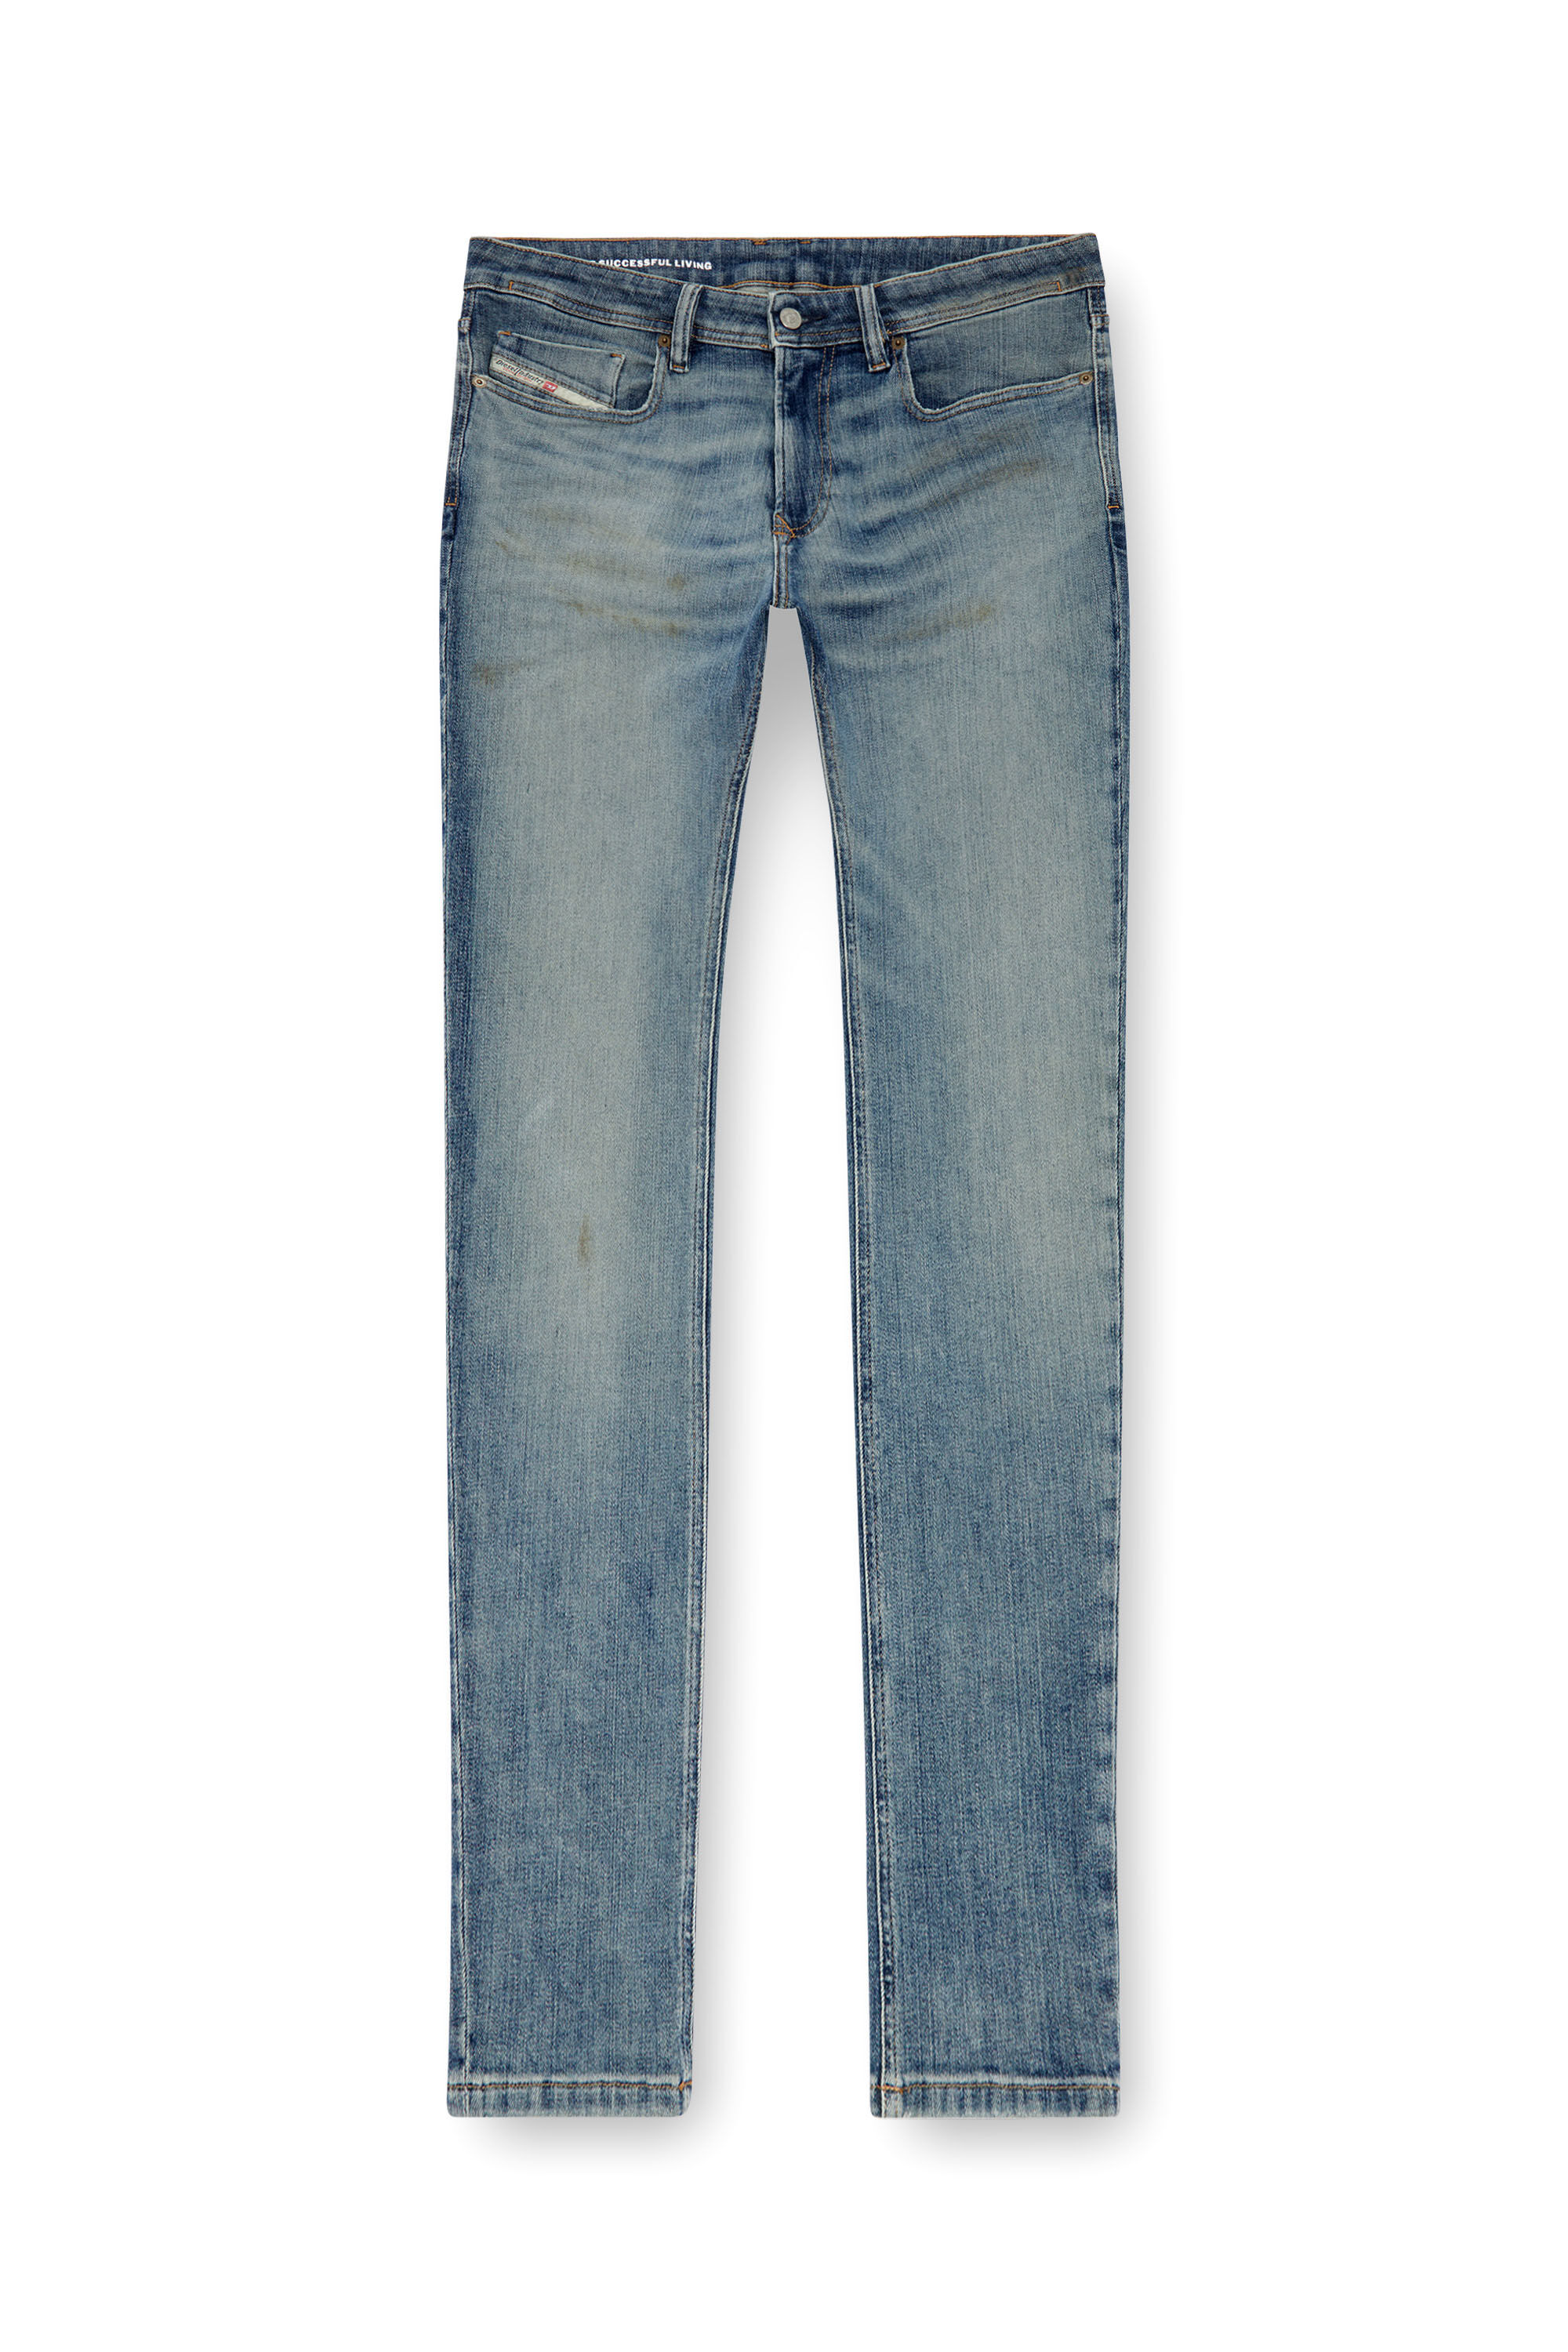 Diesel - Man Skinny Jeans 1979 Sleenker 0GRDE, Medium blue - Image 2